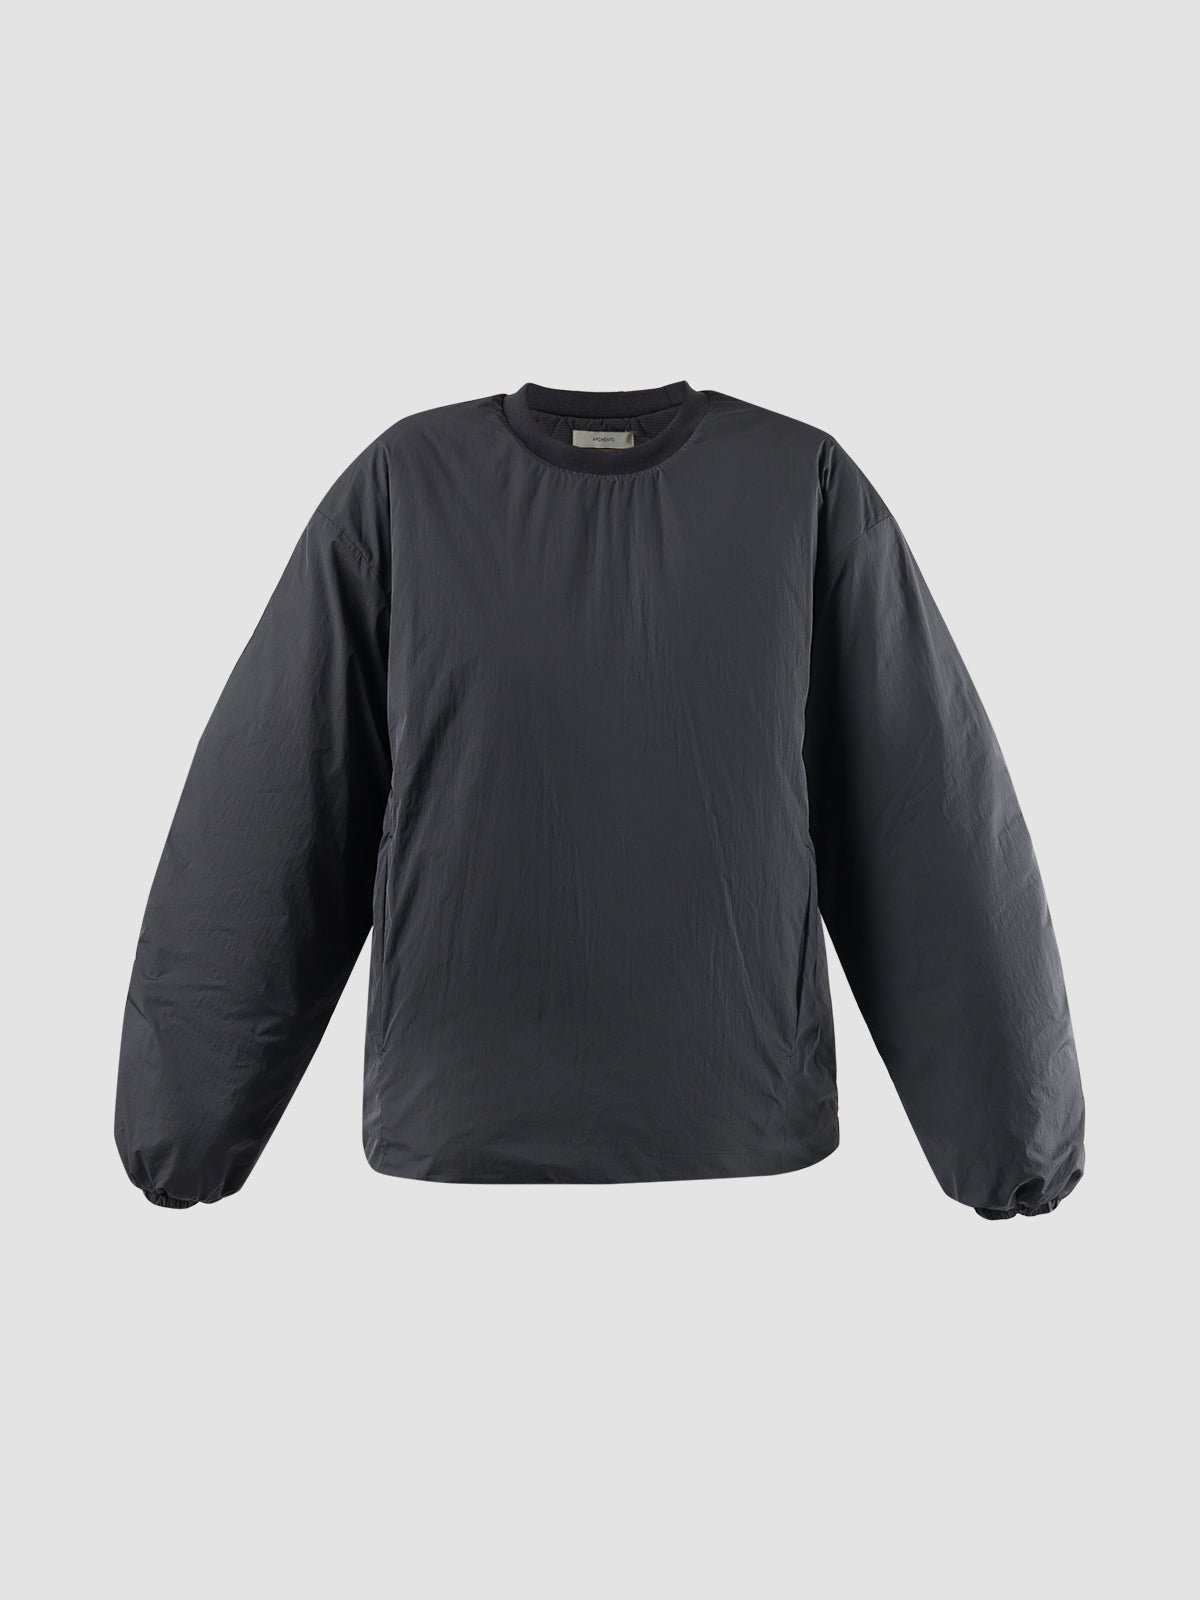 Charcoal reversible padded sweatshirt